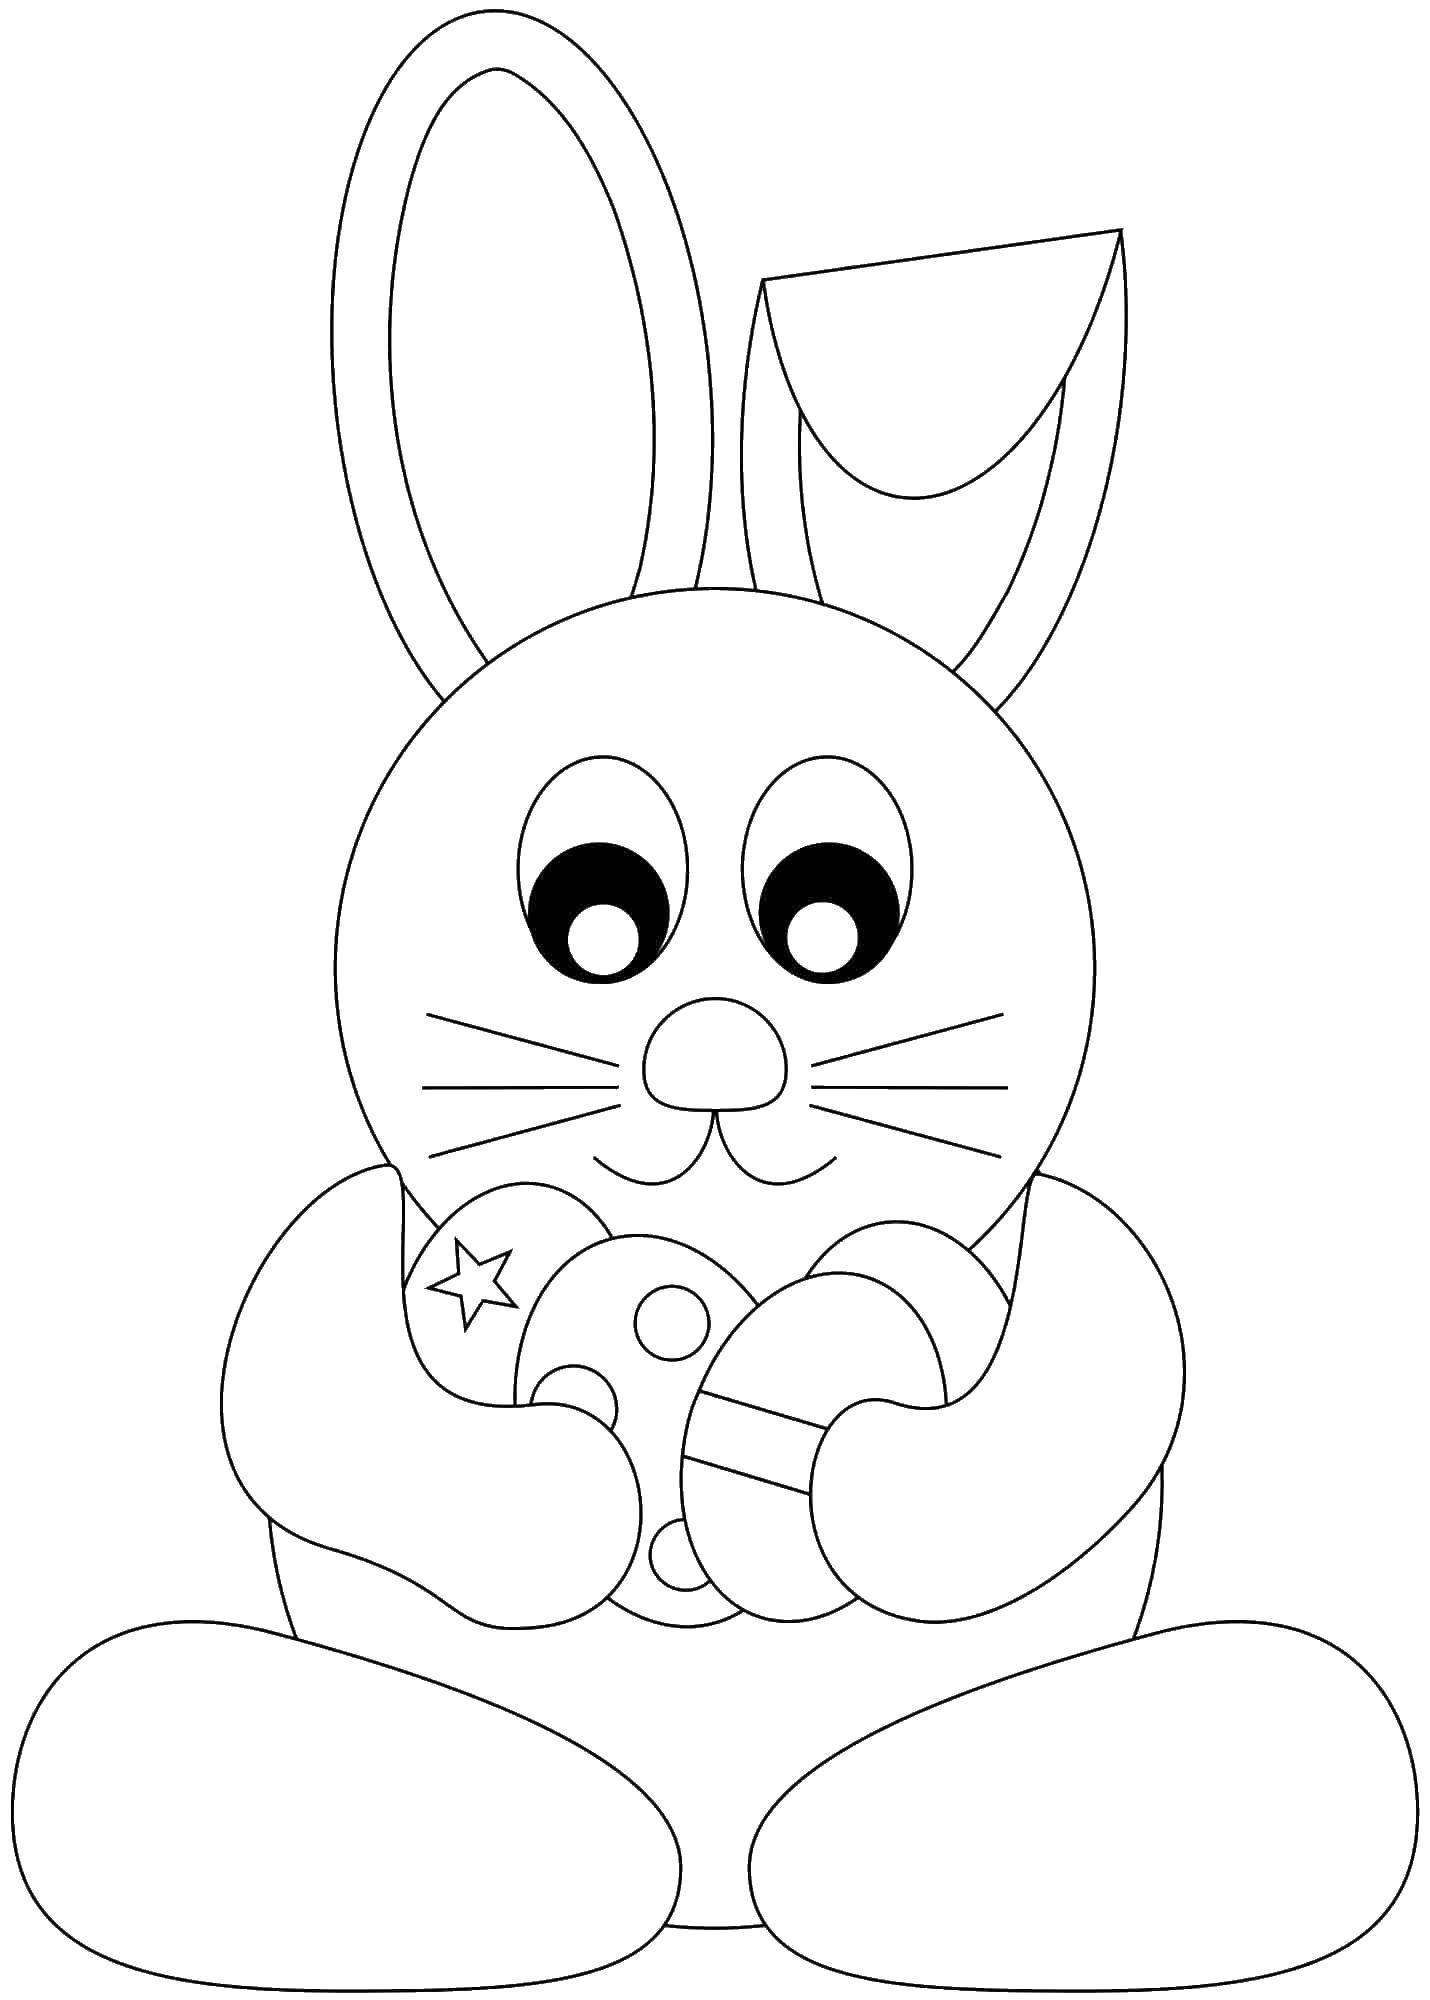 Название: Раскраска Пасхальный кролик. Категория: кролик. Теги: пасха, яйца, кролик.